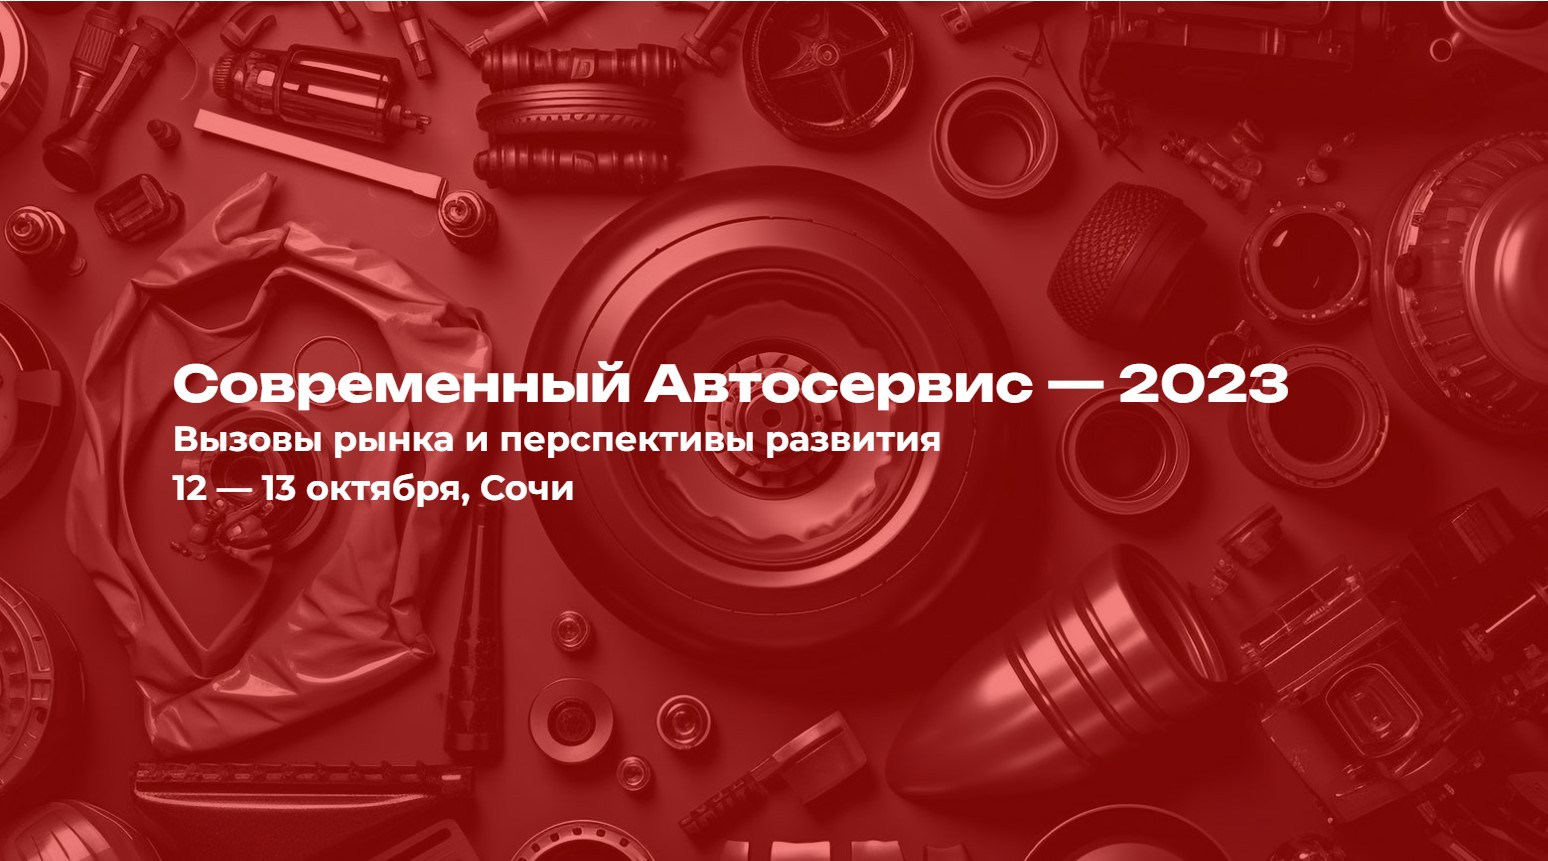 TurboOST учавствует в конференции «Современный Автосервис – 2023»